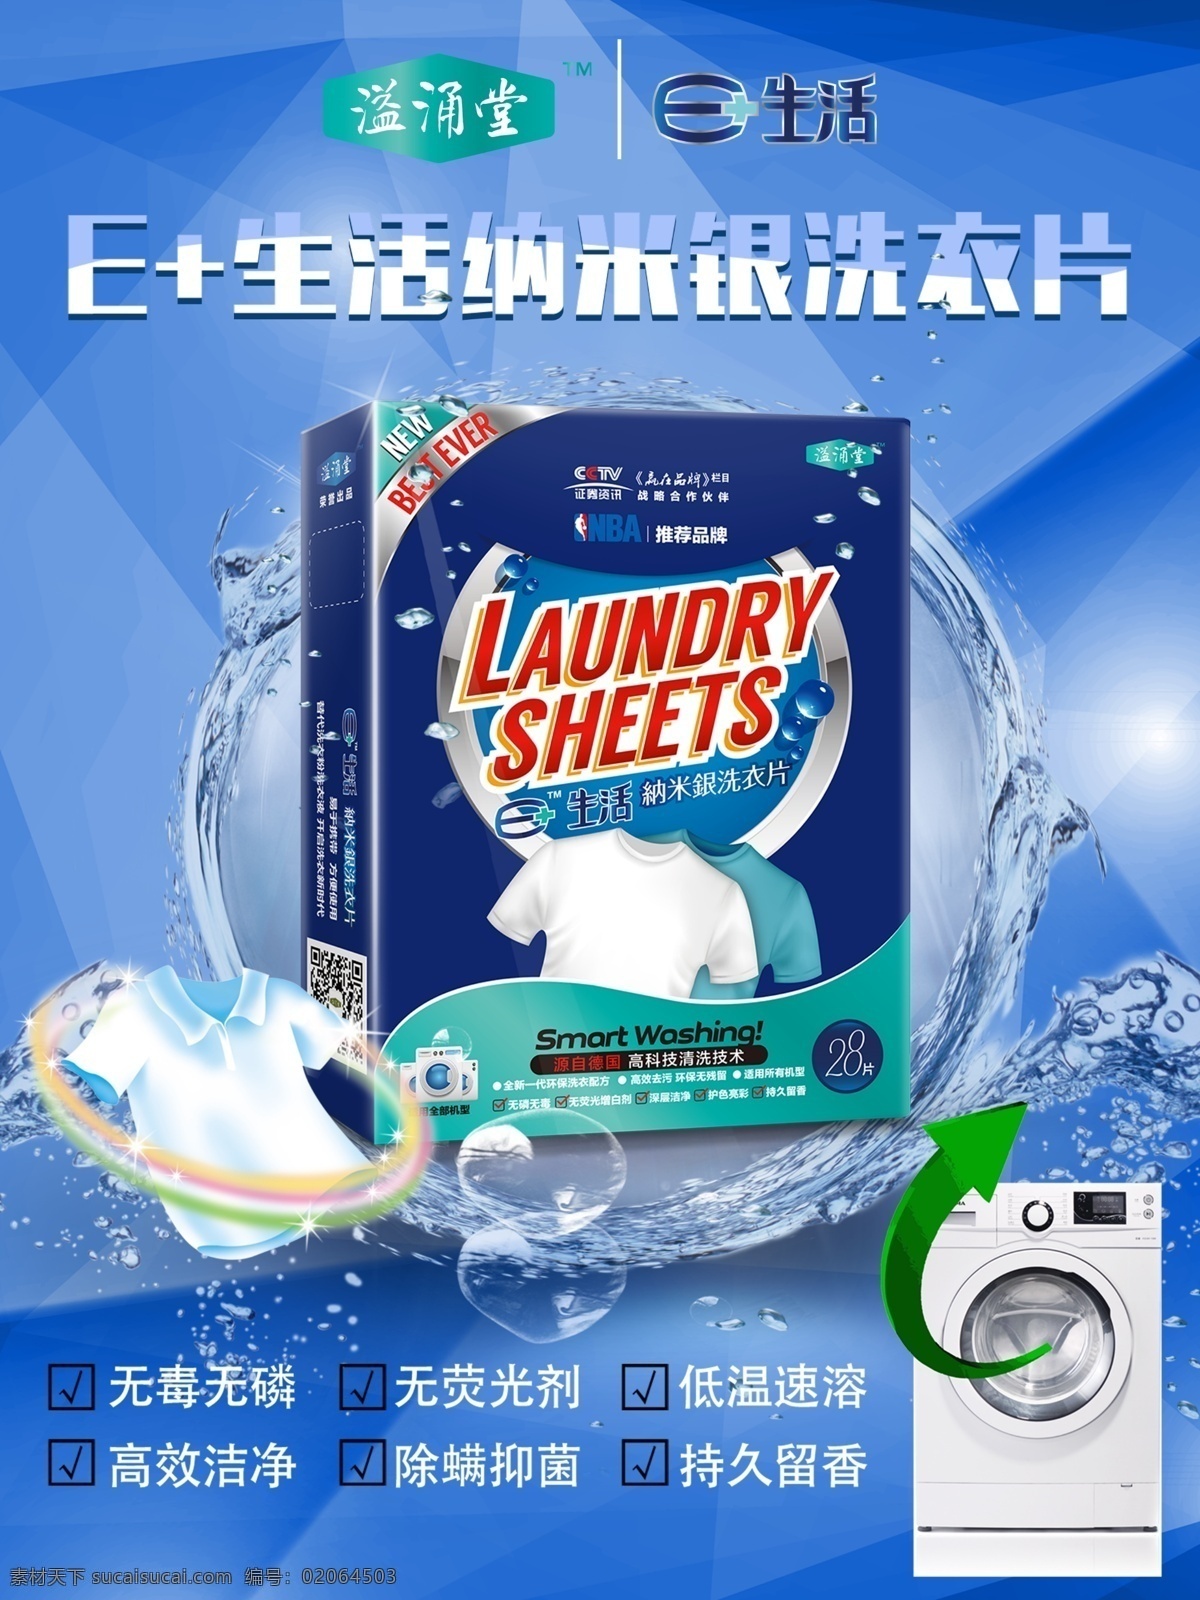 洗衣液 家系列 溢涌堂 洗涤 产品 介绍 好处 衣服 洁白 洁净 蓝色